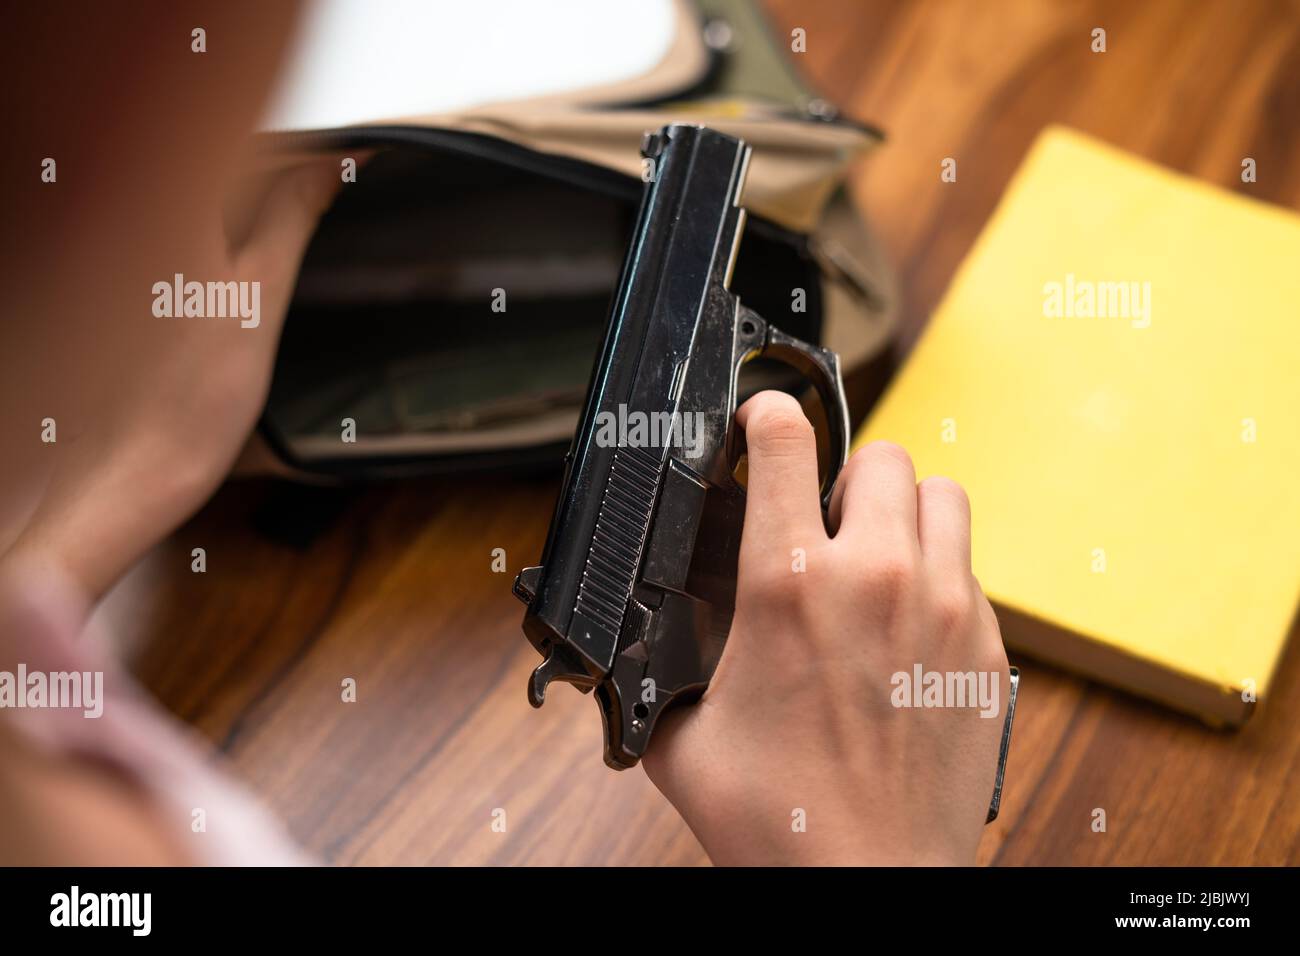 Konzentrieren Sie sich auf die Waffe, Nahaufnahme eines Kindes, das in der Schule mit Büchern die Waffe aus dem Rucksack herausnimmt - Konzept der US- oder amerikanischen Waffengesetze. Stockfoto